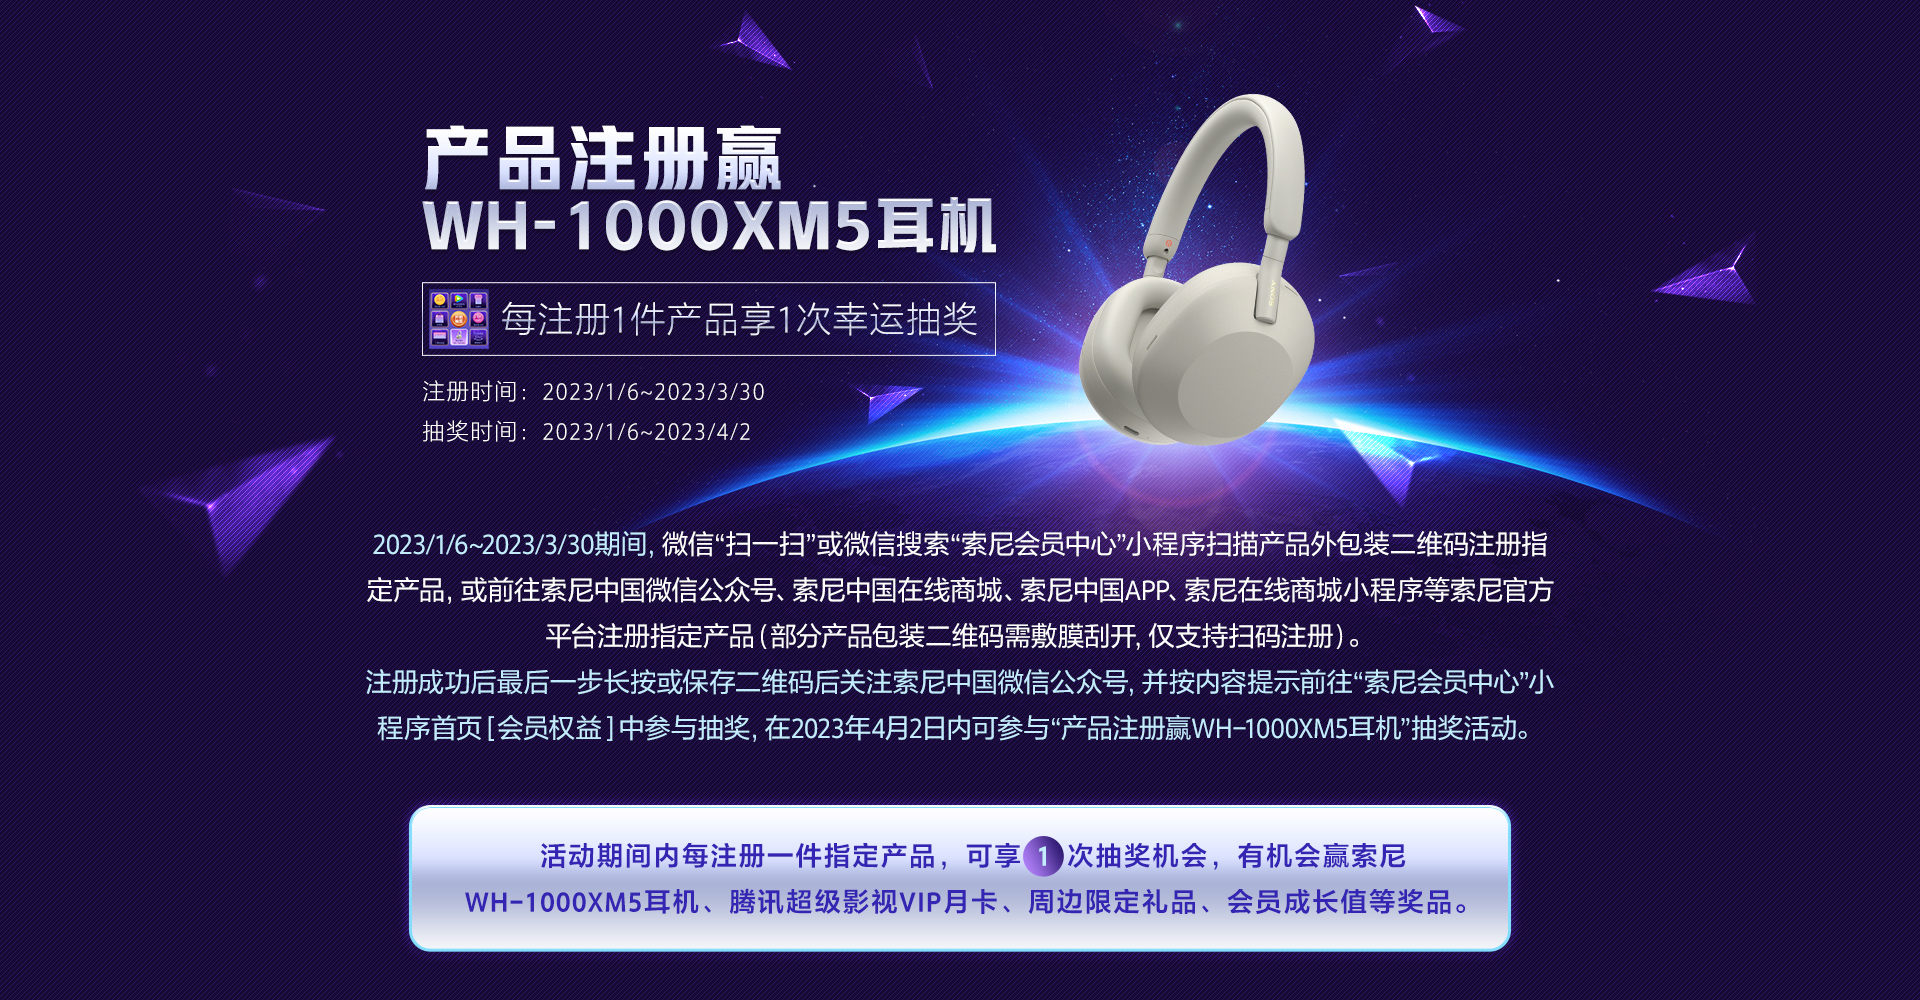 产品注册赢WH-1000XM5耳机